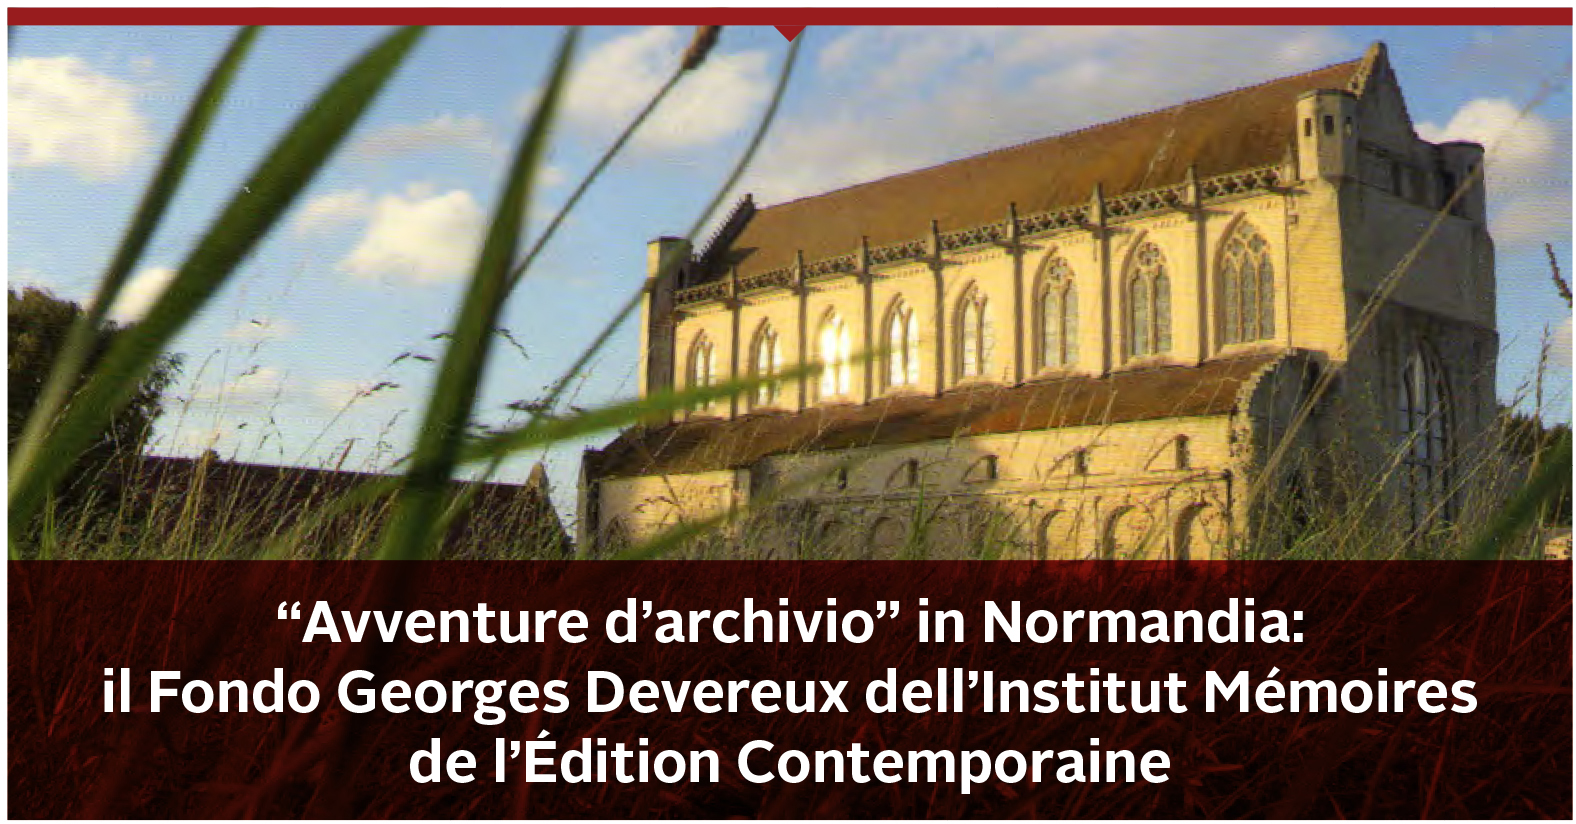 “Avventure d’archivio” in Normandia: il Fondo Georges Devereux dell’Institut Mémoires de l’Édition Contemporaine